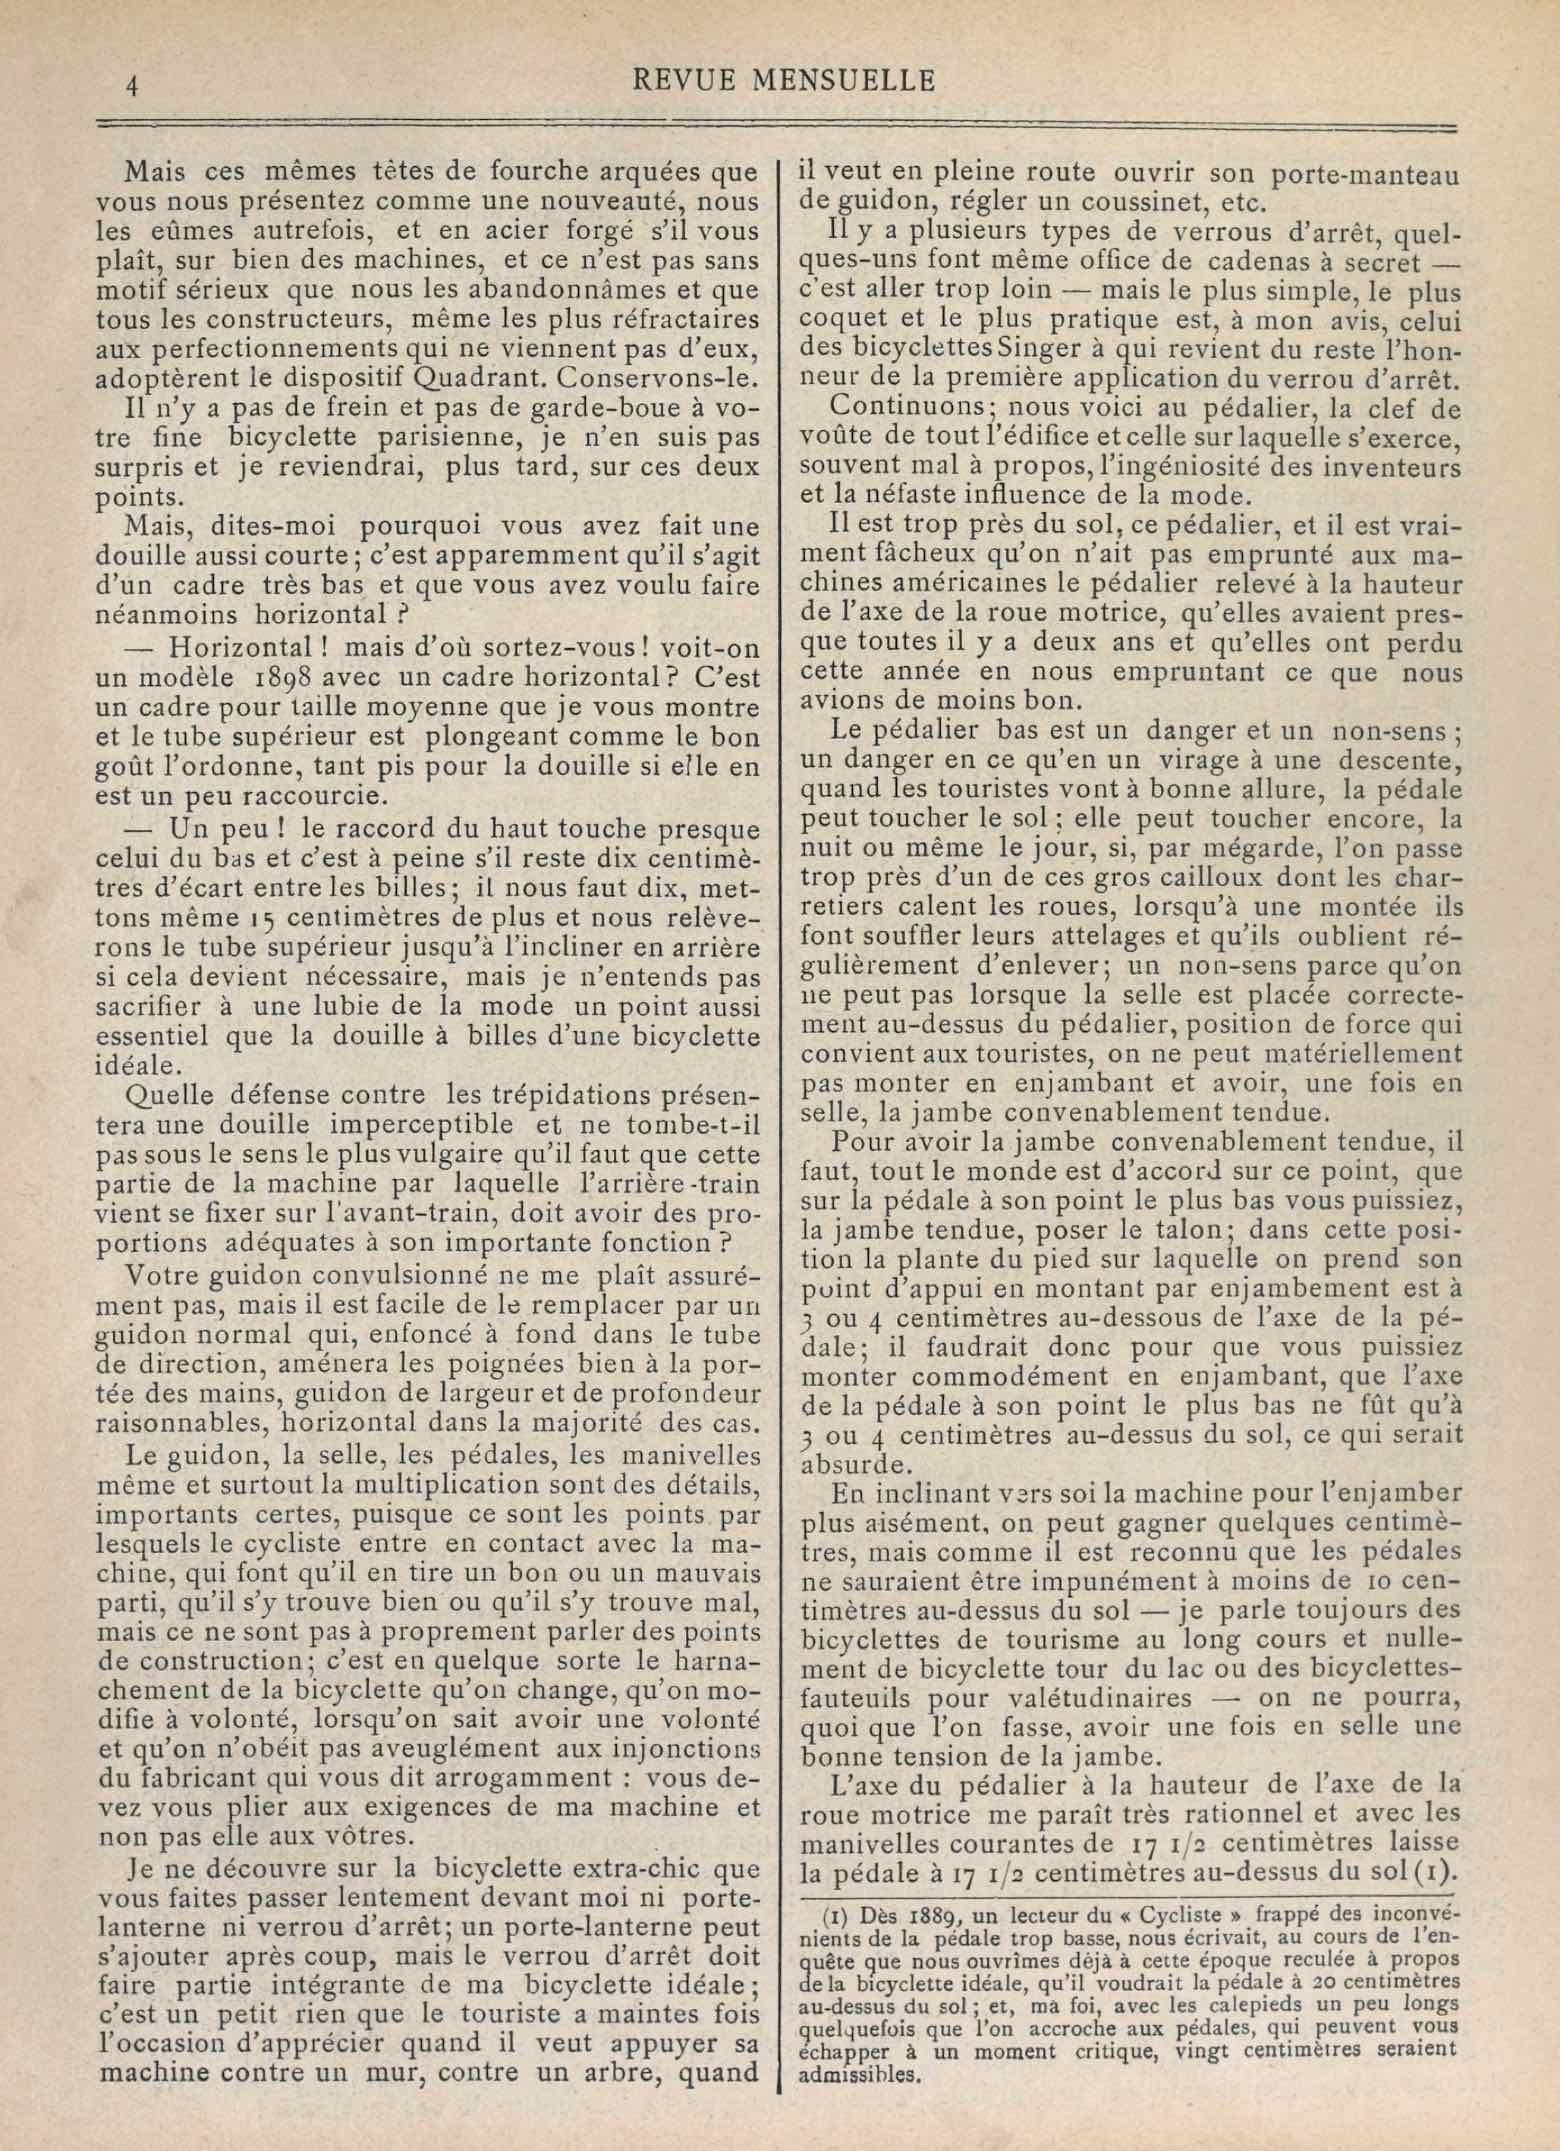 T.C.F. Revue Mensuelle January 1898 - La Bicyclette ideale du Touriste scan 3 main image